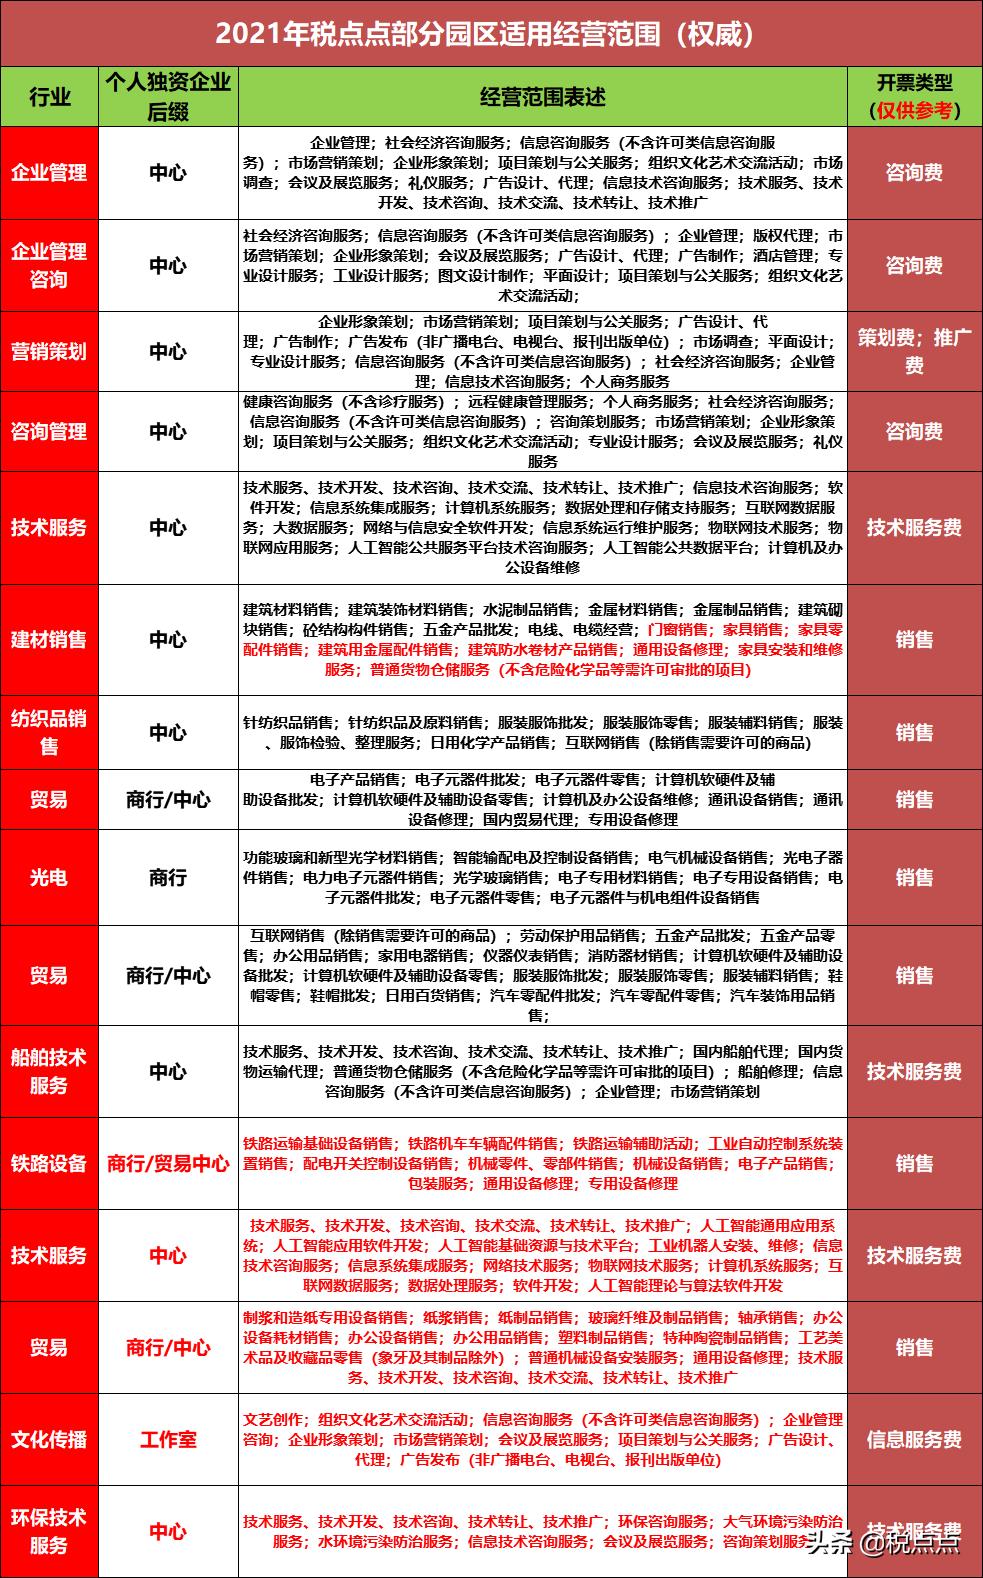 上海取消个独企业核定征收,当日热点